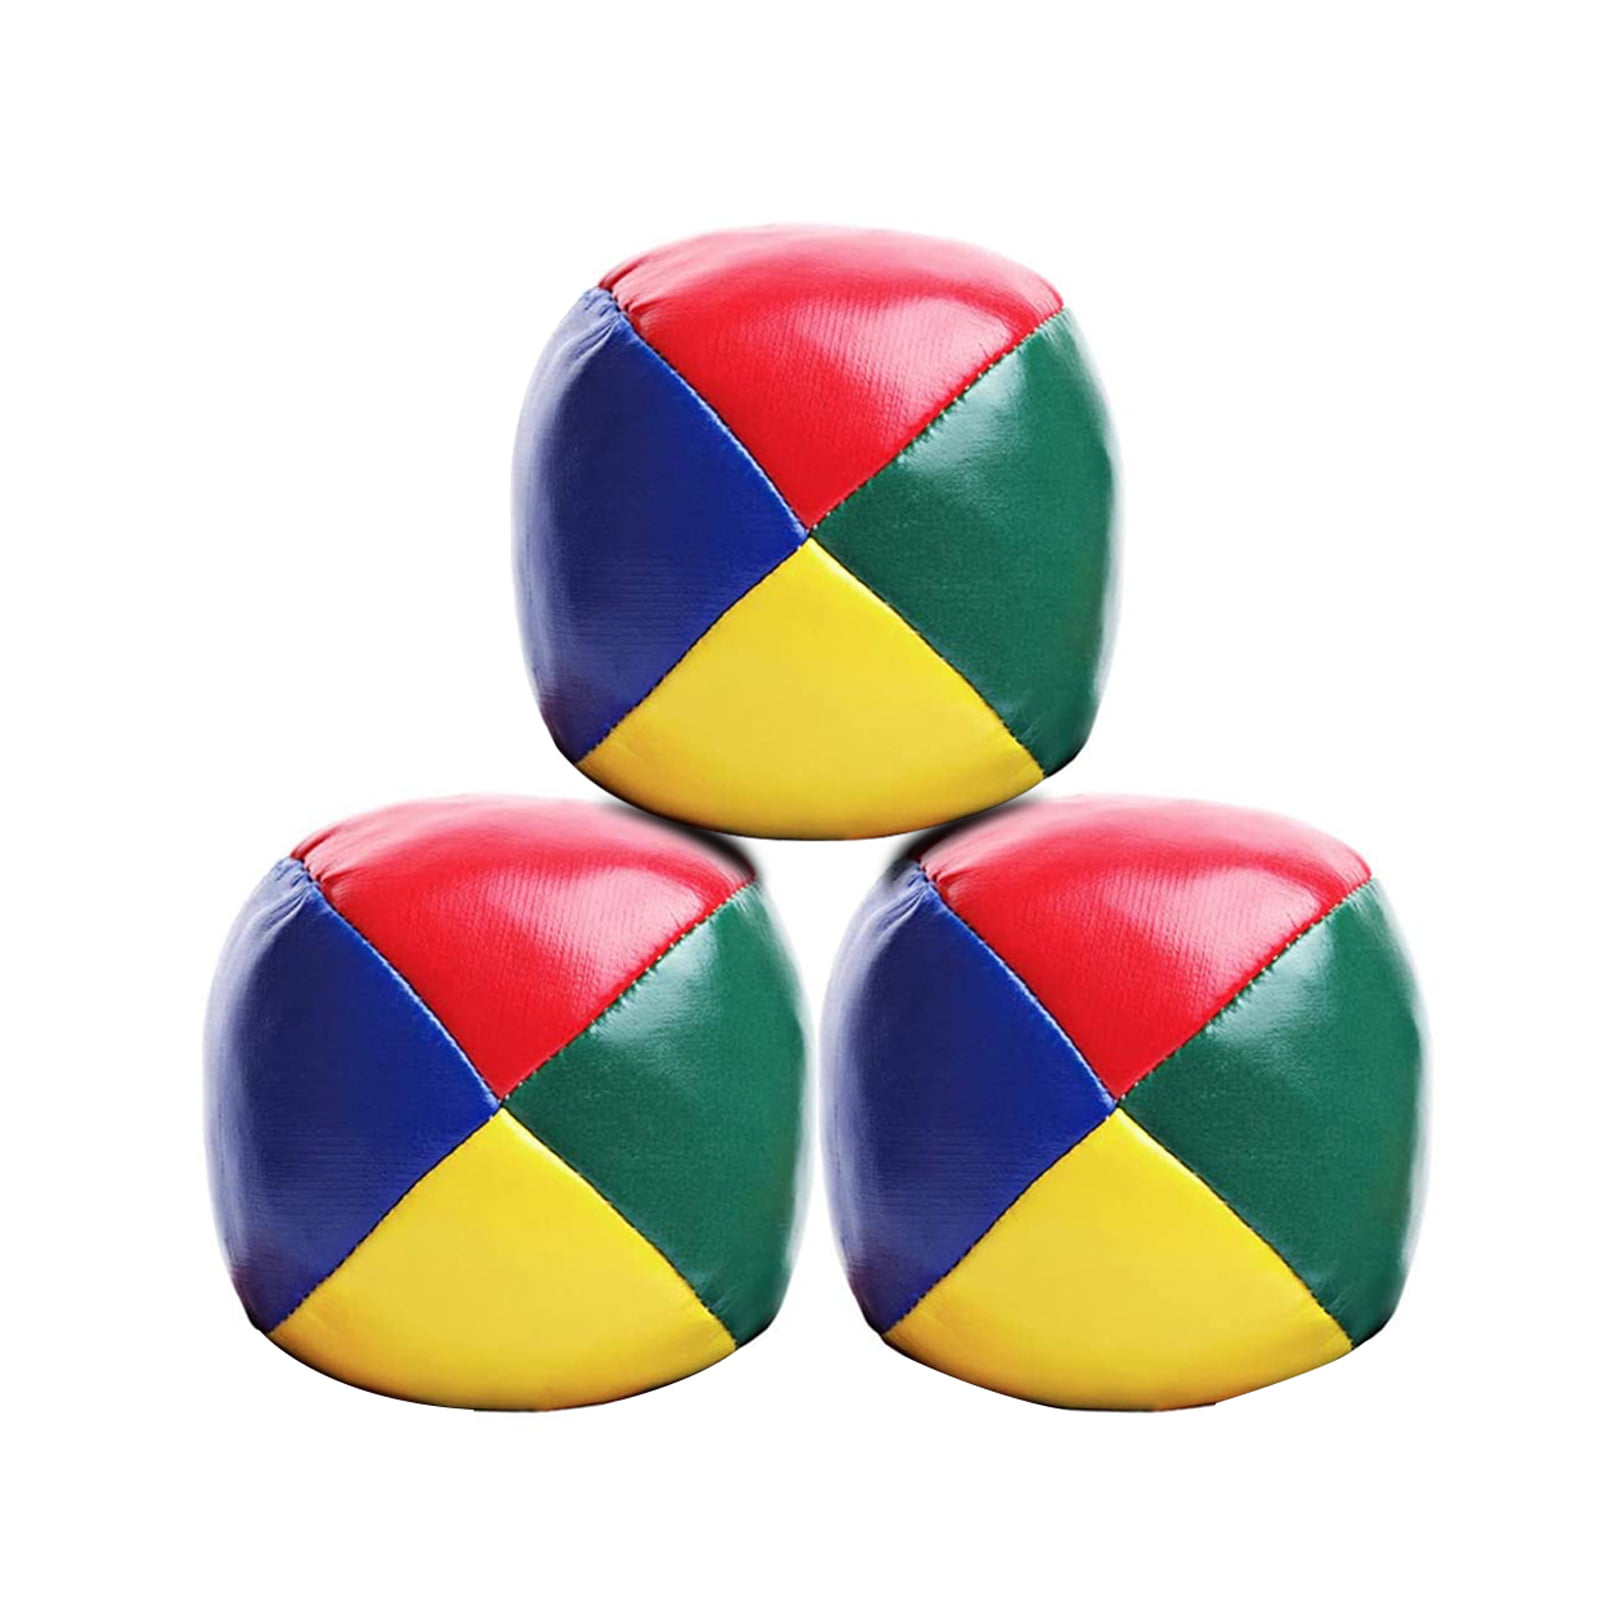 Duncan Toys Juggling Balls Multicolor 3830JG for sale online 